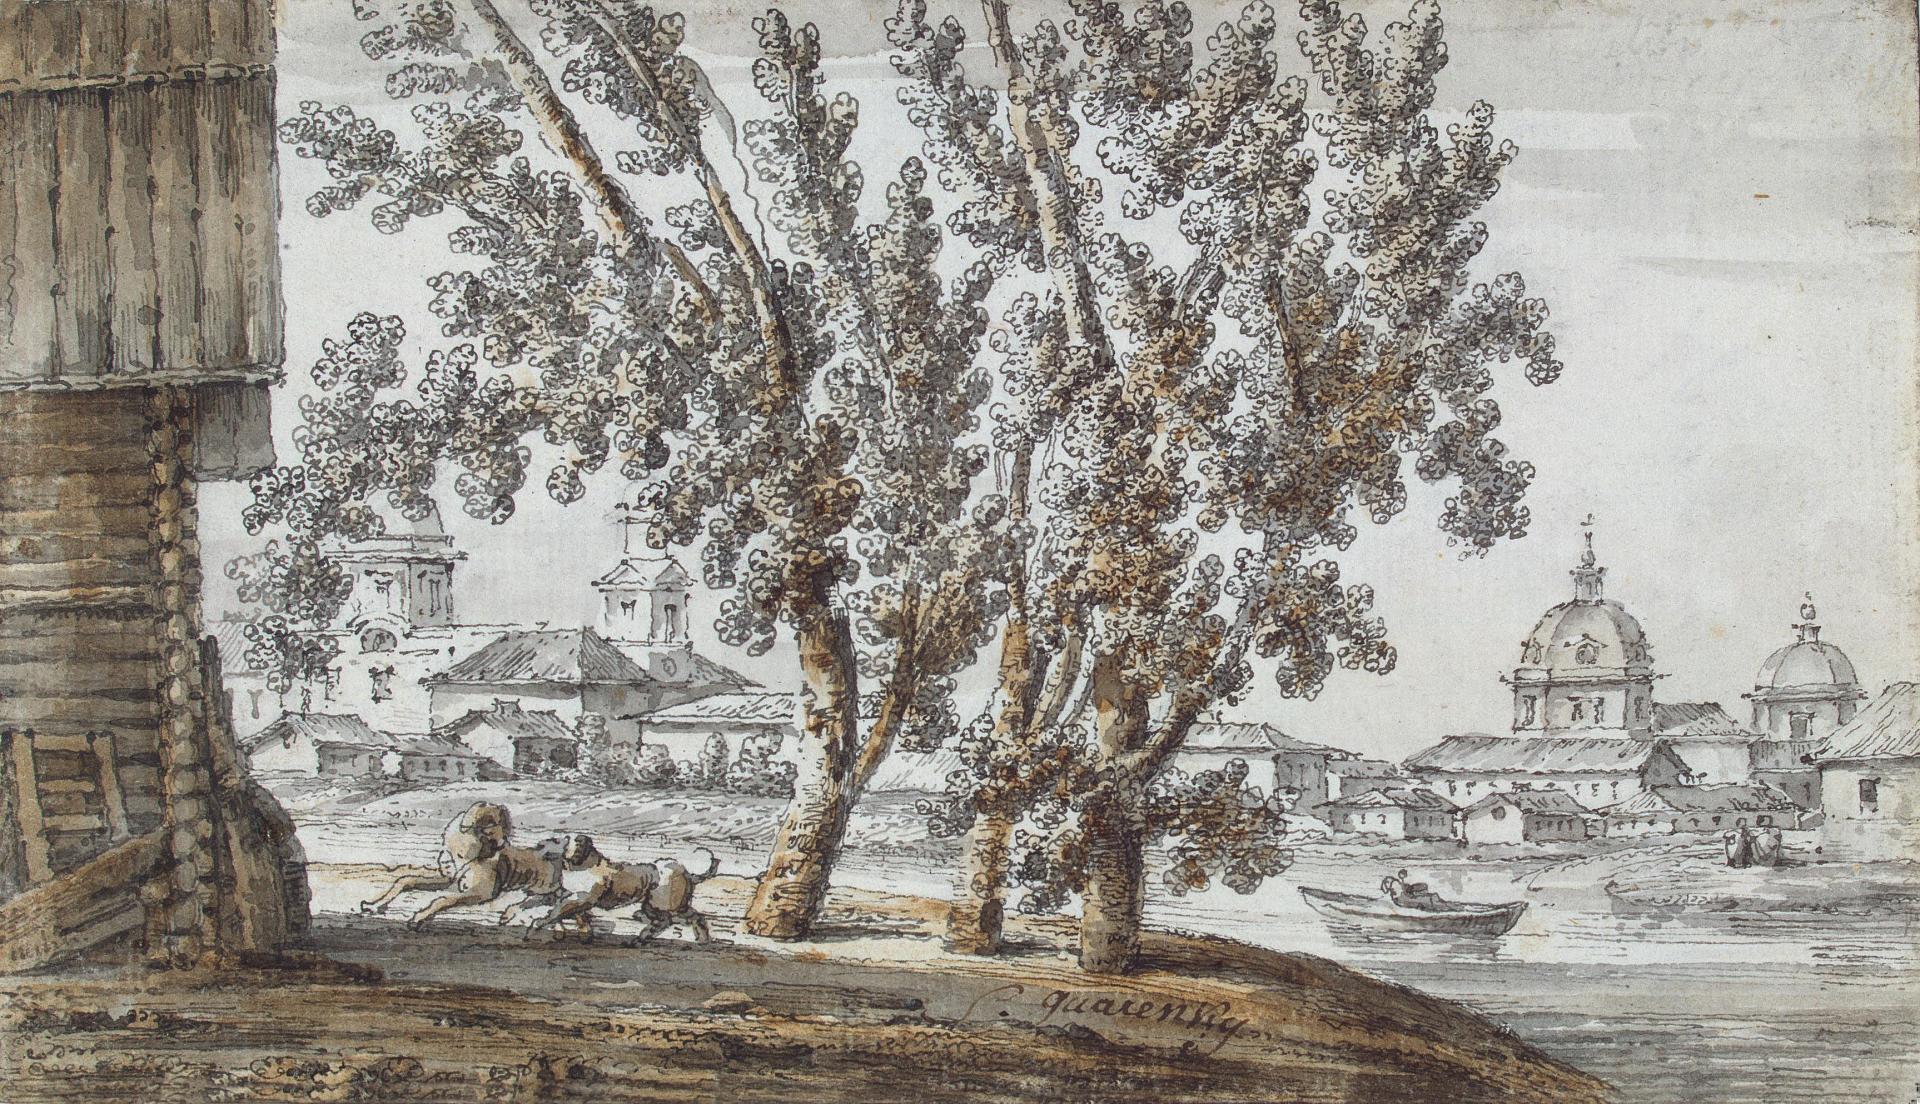 Джакомо Кваренги. "Пейзаж с церквями у реки". 1790-е. Эрмитаж, Санкт-Петербург.